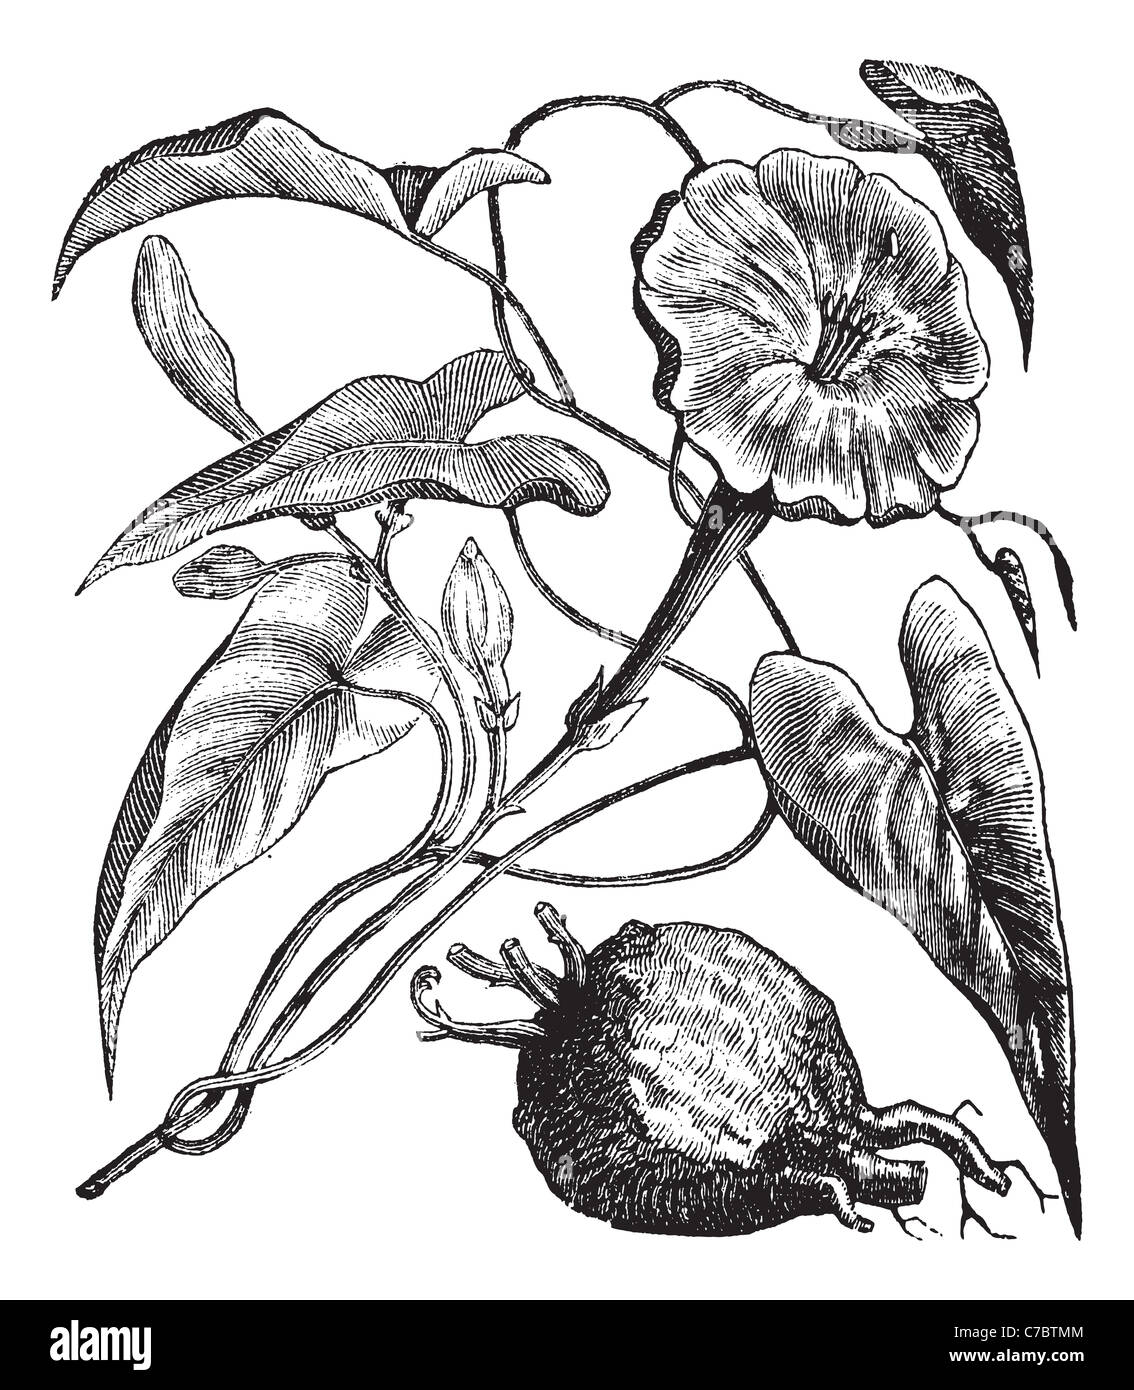 Exogonium purga o di Jalapa, vintage incisione. Vecchie illustrazioni incise di purga Exogonium isolato su uno sfondo bianco. Foto Stock